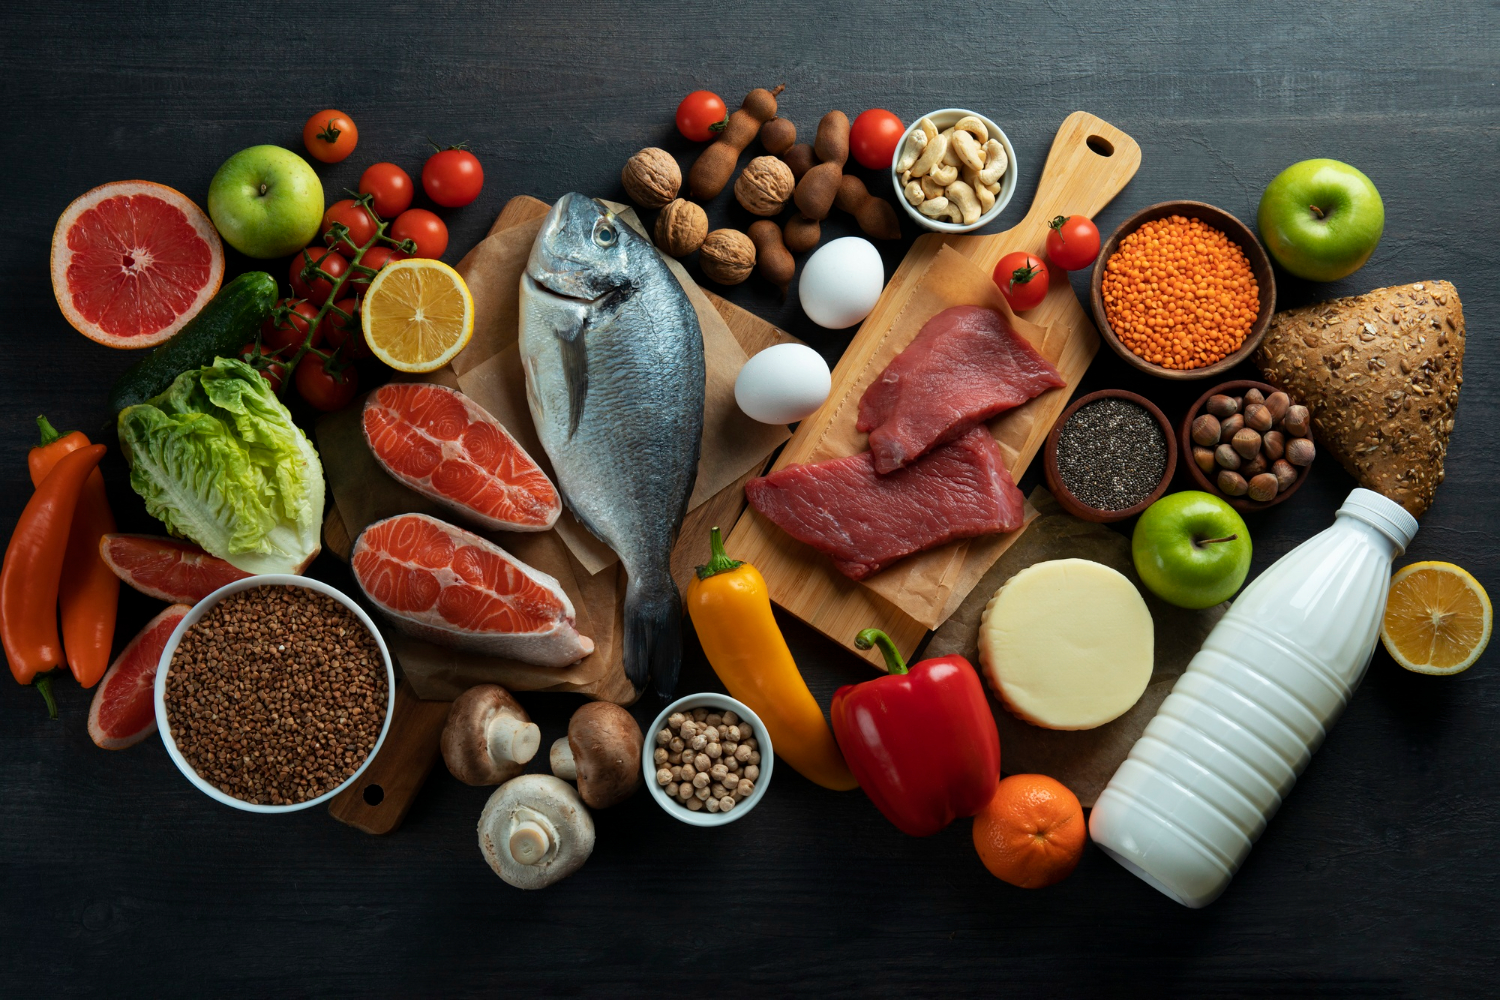 Mau Sehat? Yuk Cari Tahu Manfaat dan Tips Menyusun Makanan Sehat Bergizi untuk Penuhi Kebutuhan Nutrisi Tubuh